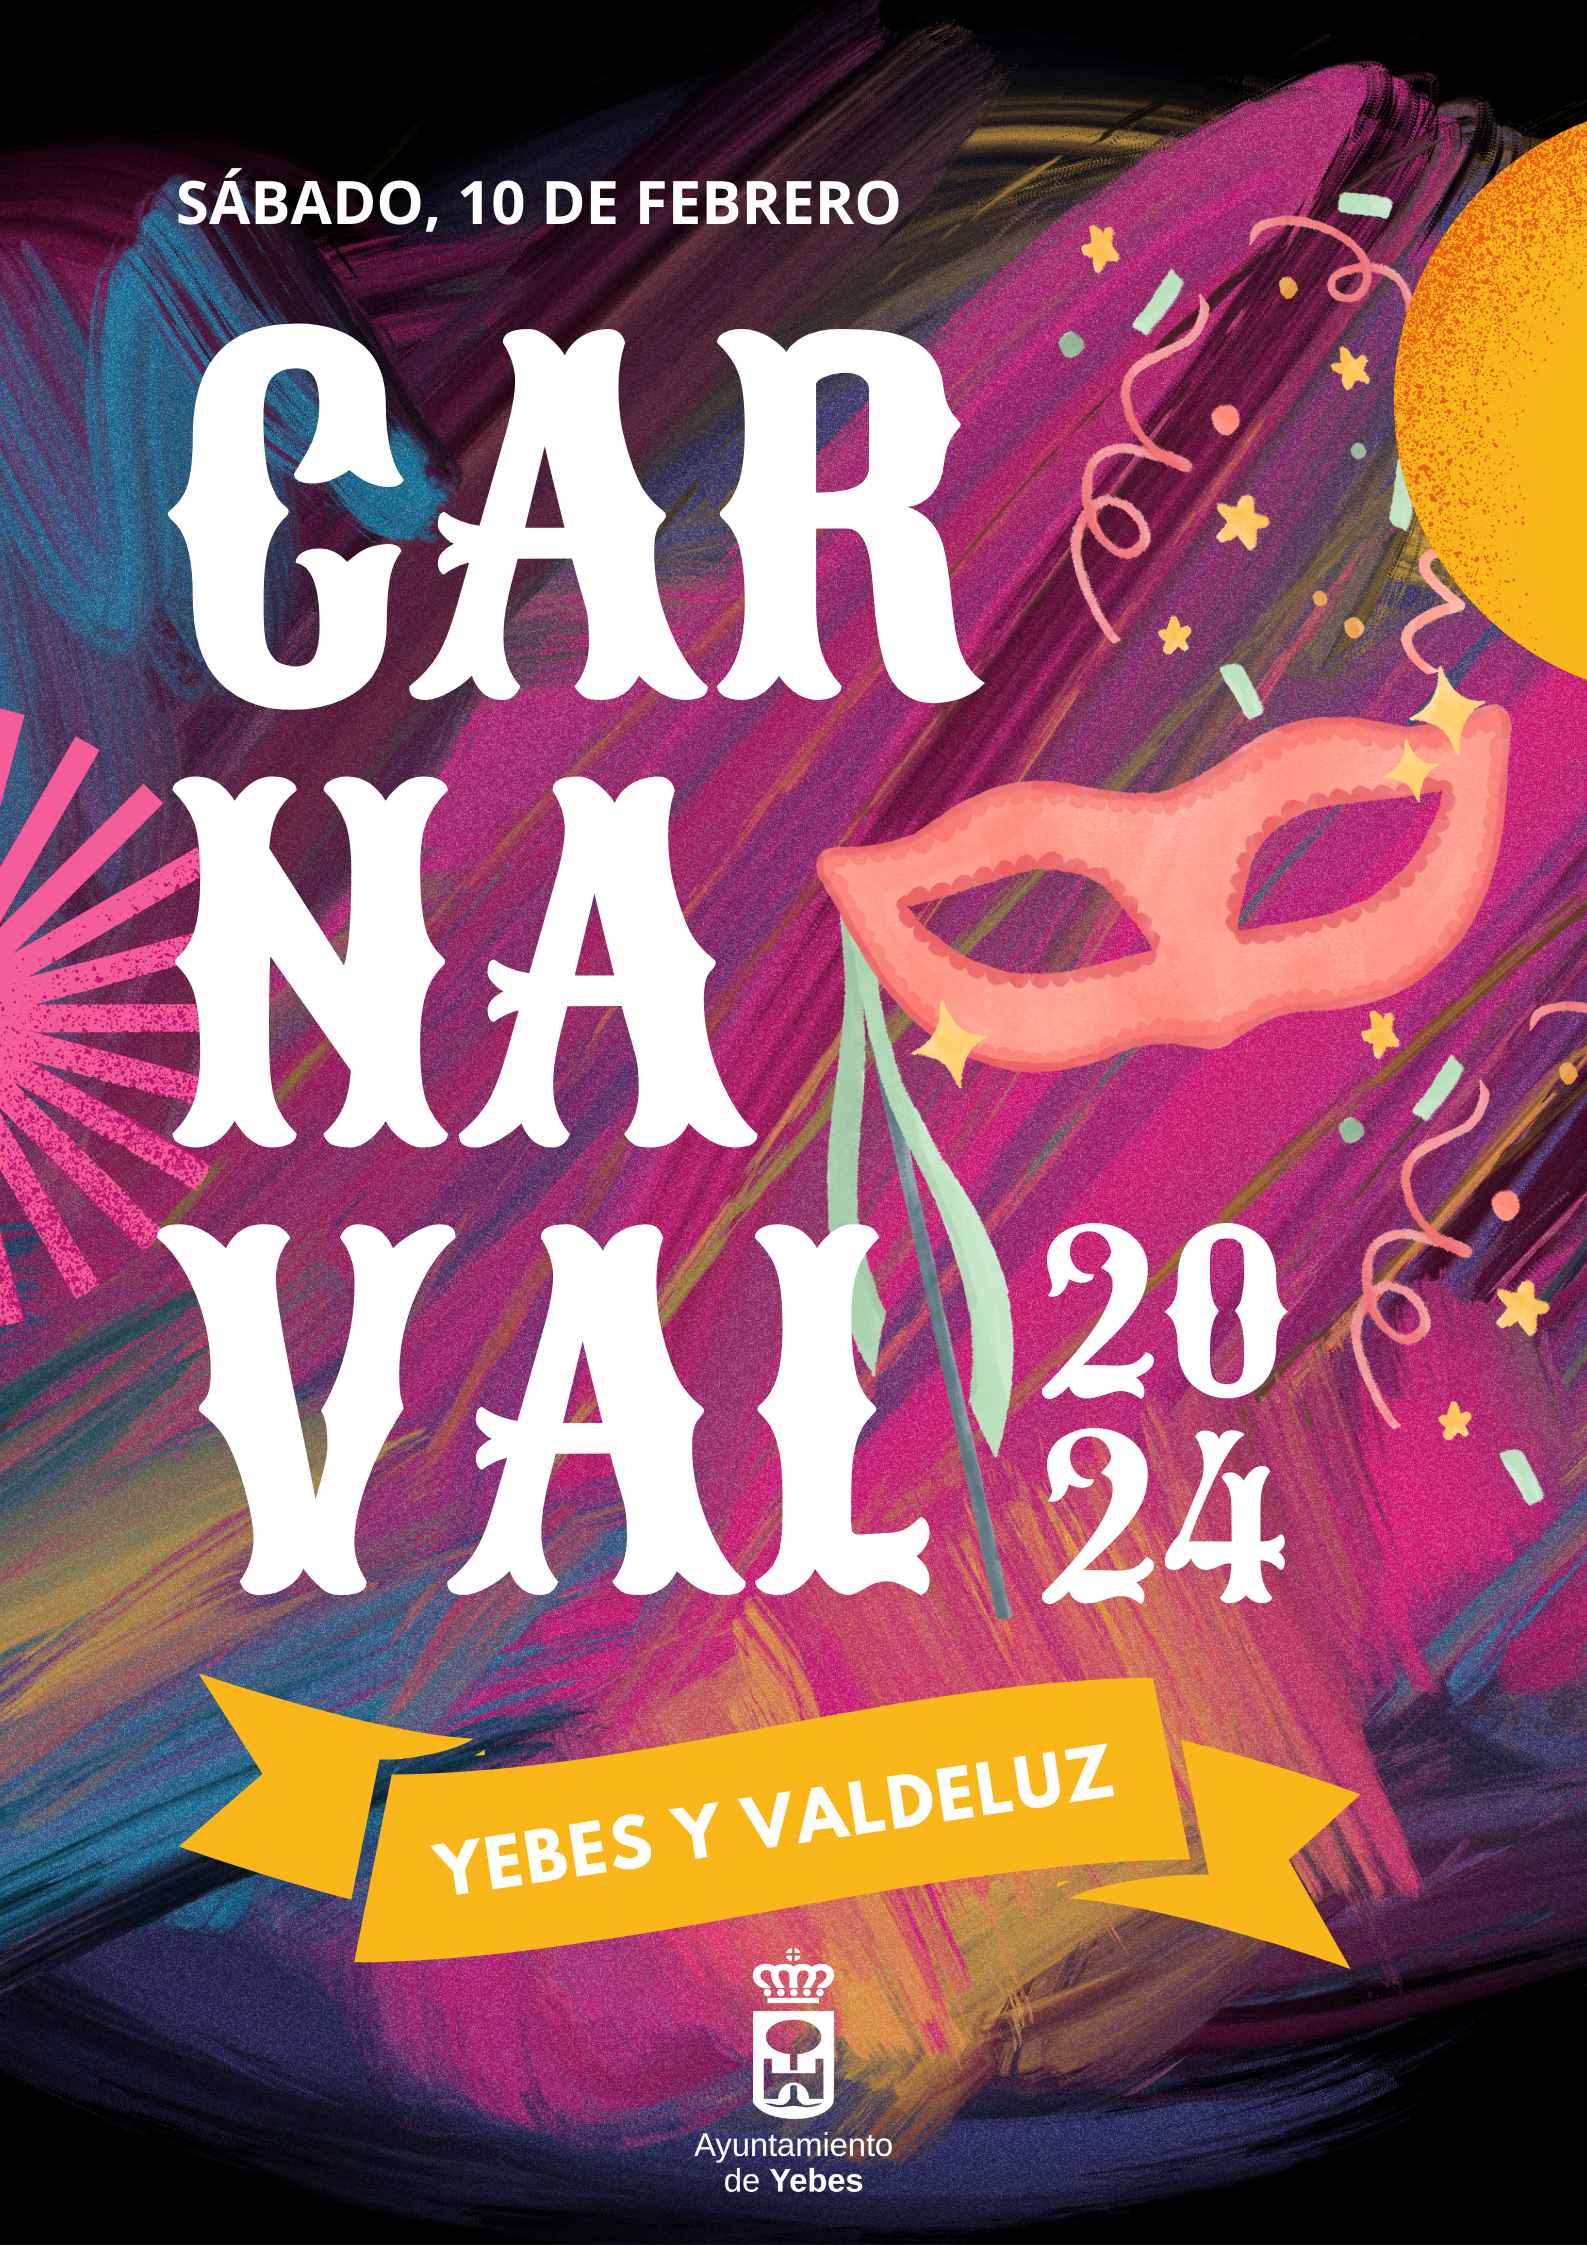 Celebración del Carnaval en Yebes y Valdeluz